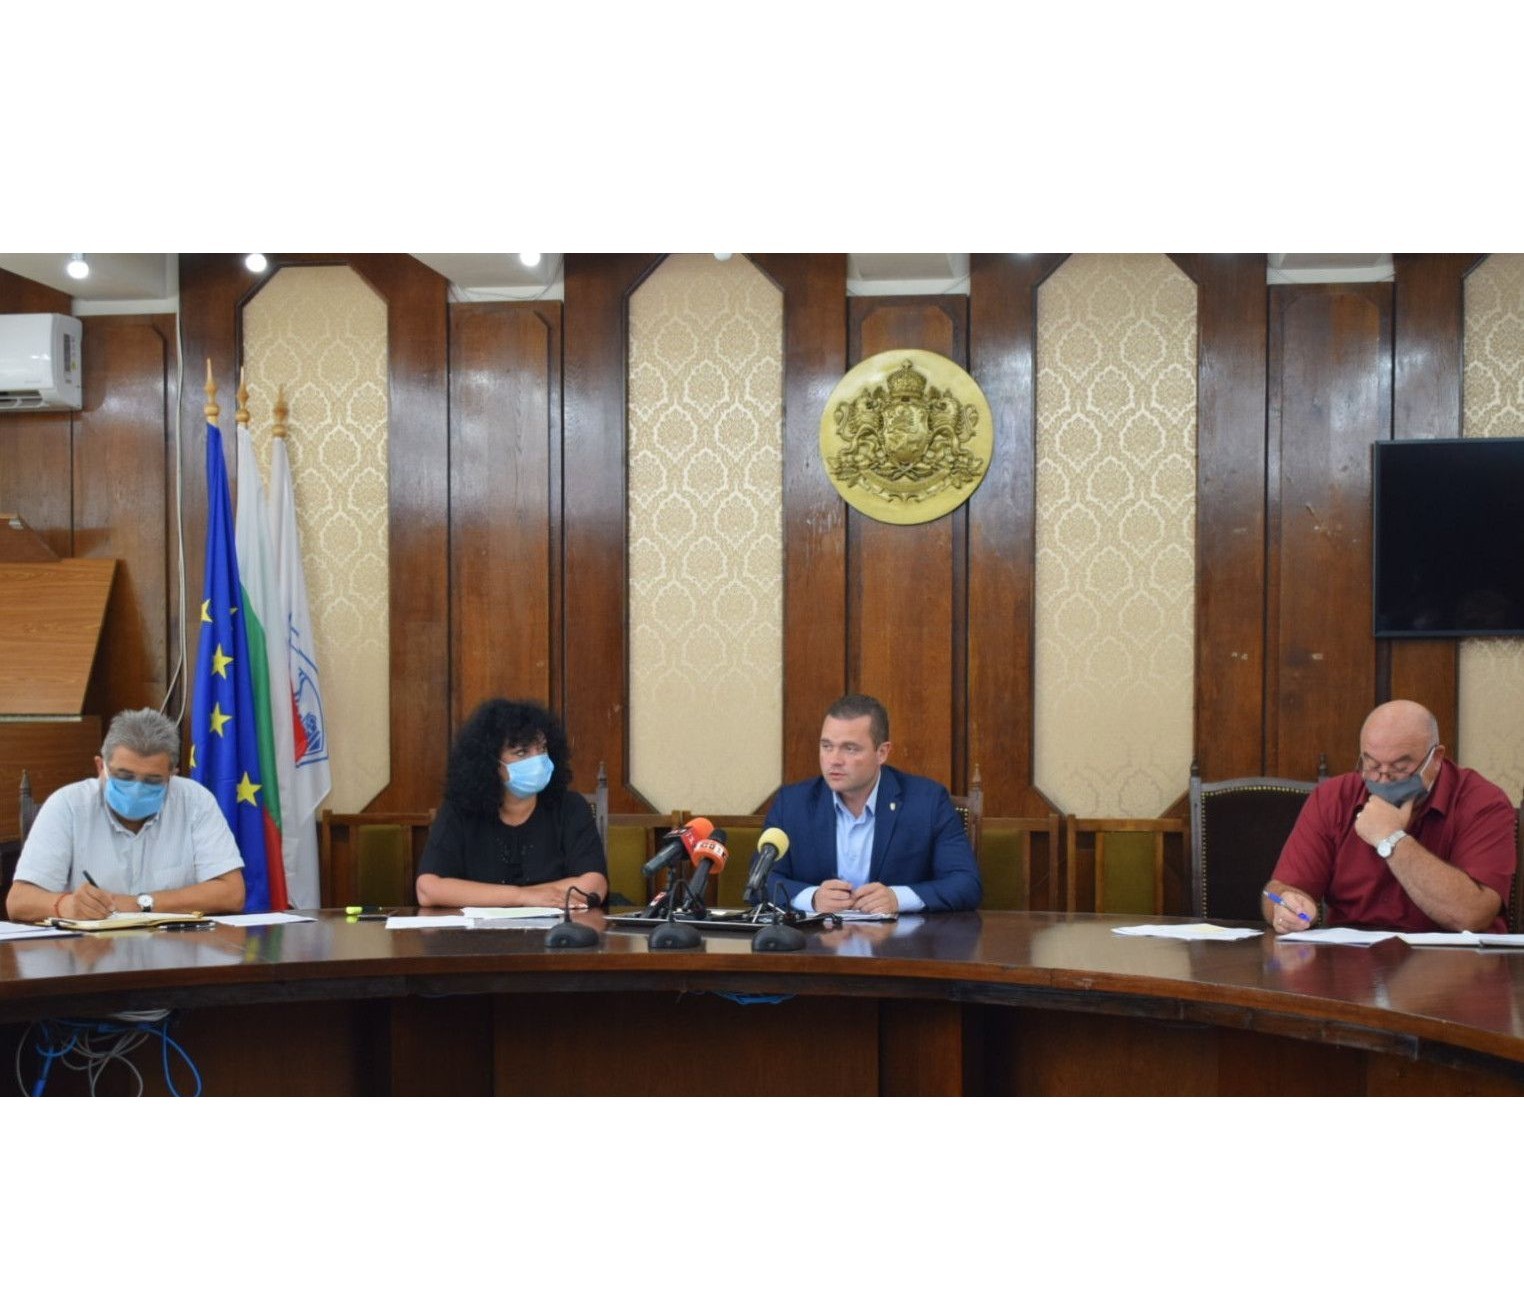 Пенчо Милков: „Община Русе работи активно по всички сигнали от граждани